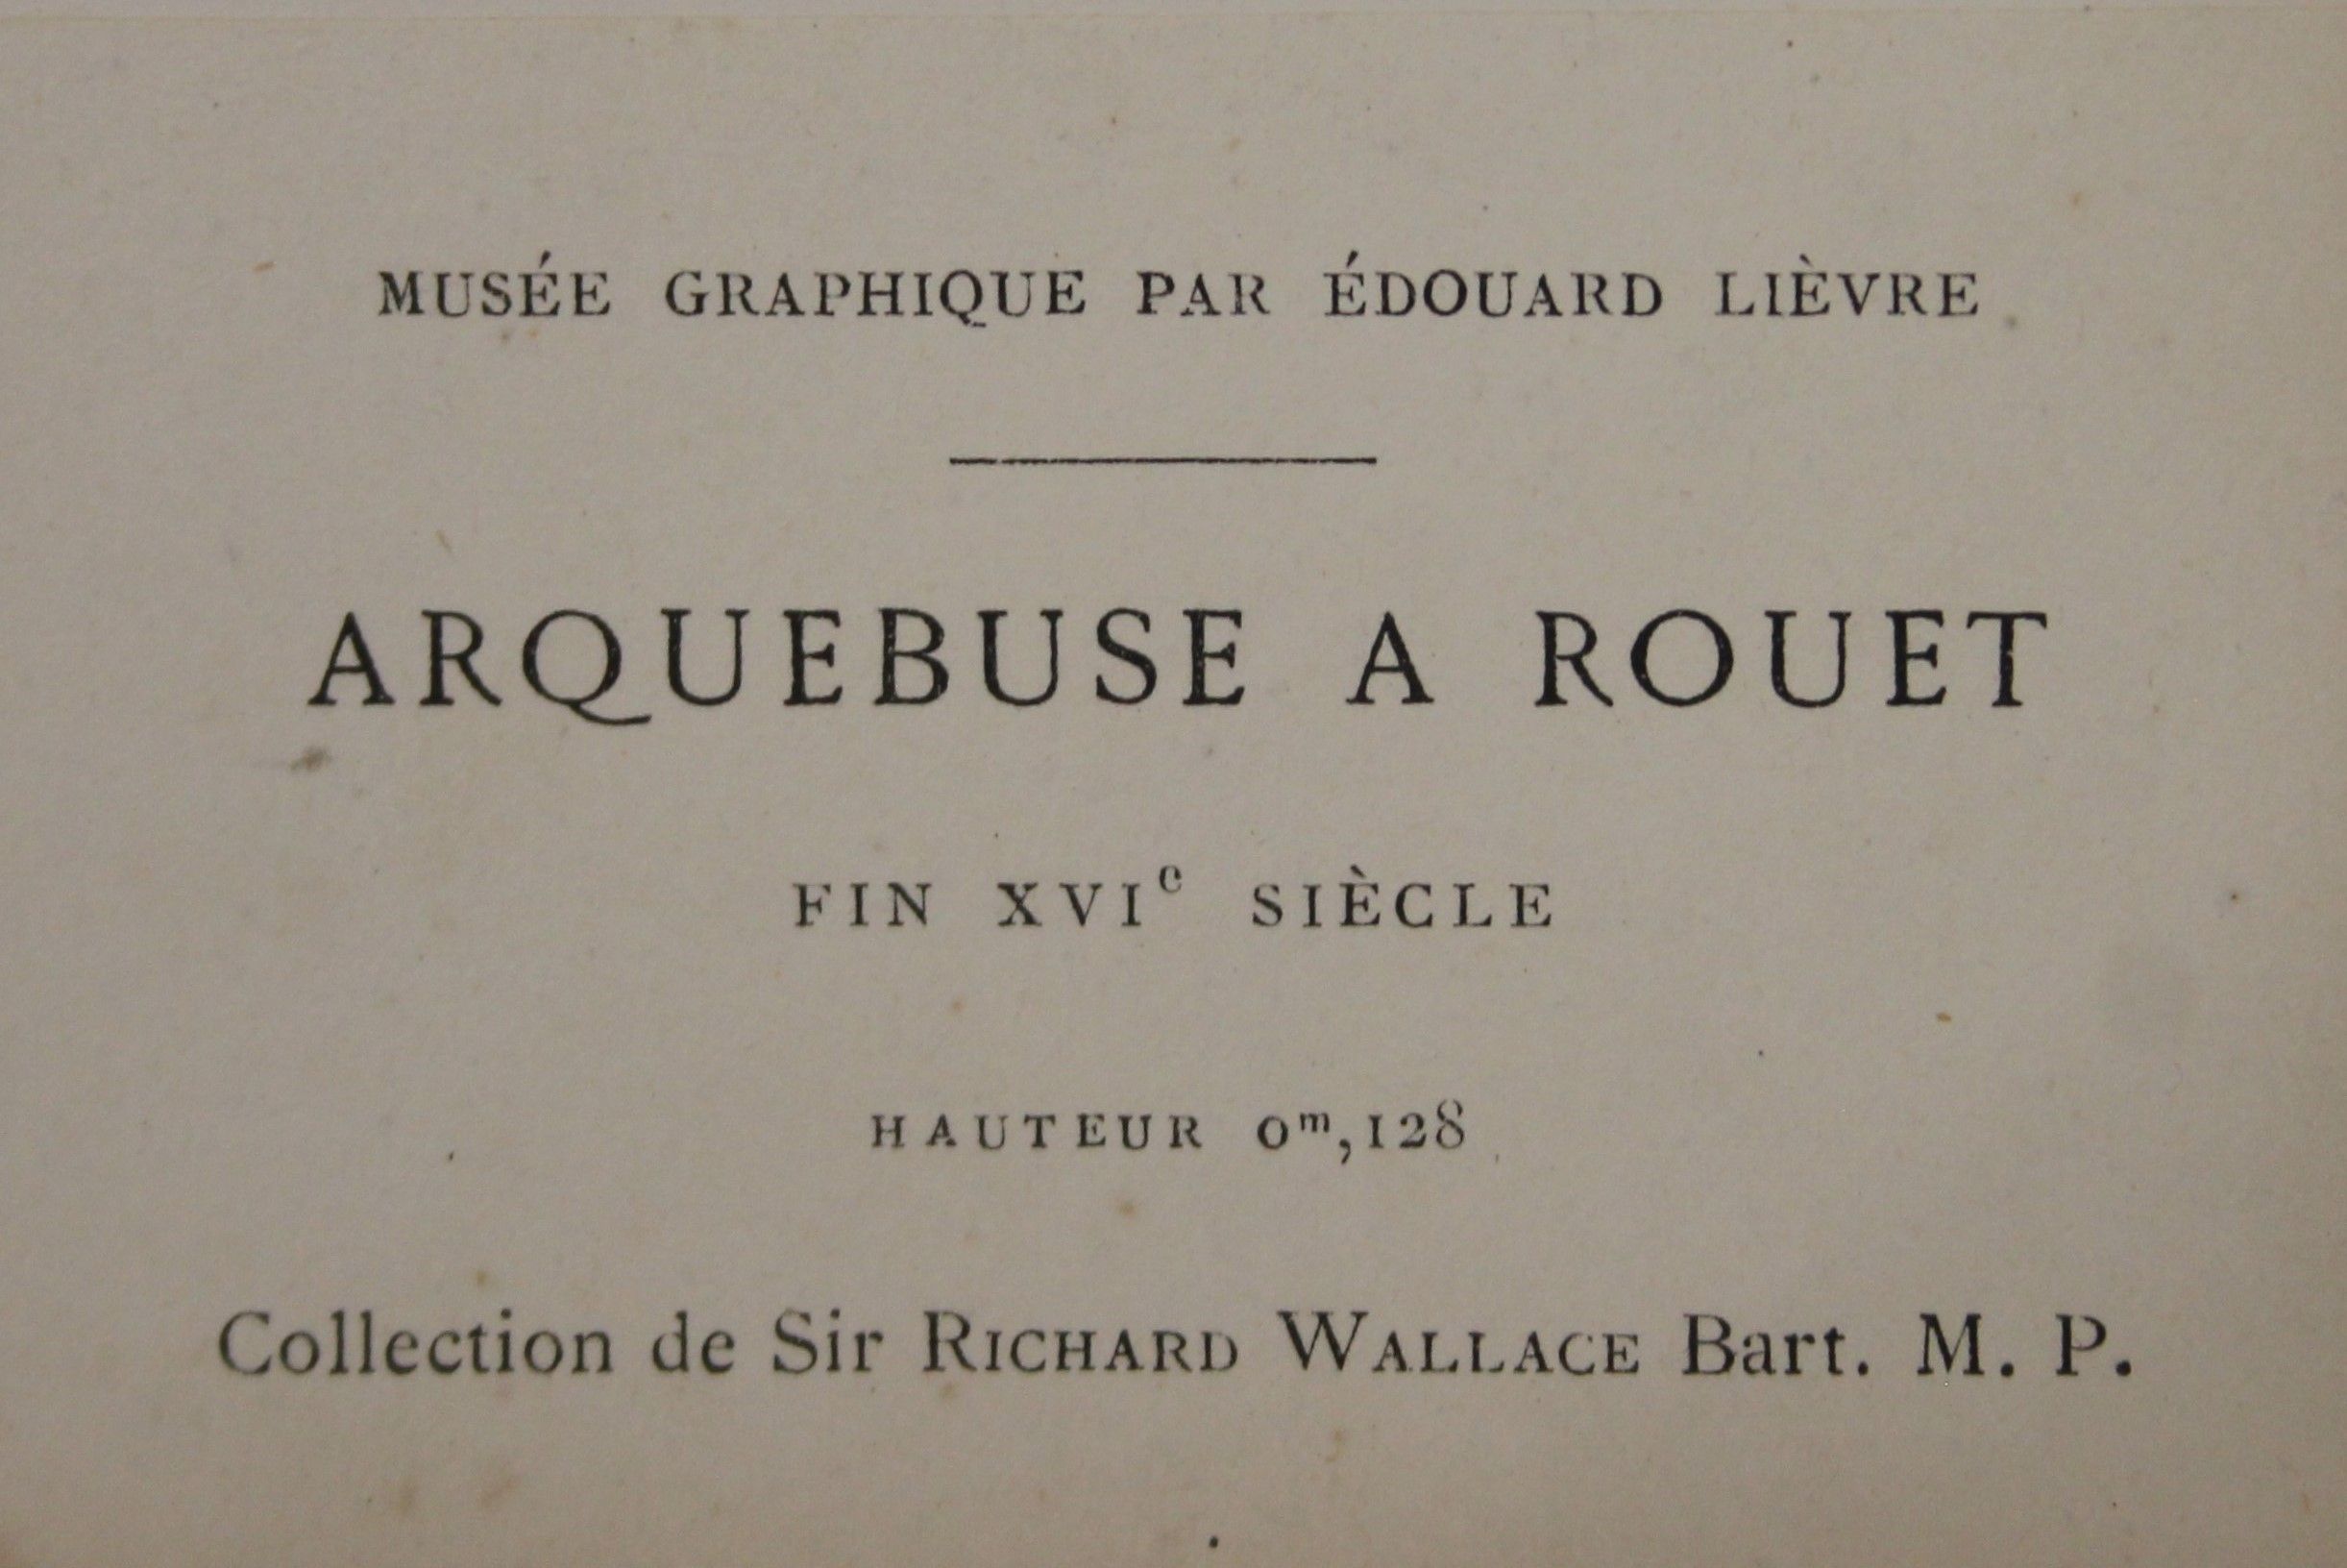 Lievre (Edouard), Musee Graphique Pour L'Etude de L'Art dans Toutes des Applications, - Image 13 of 23